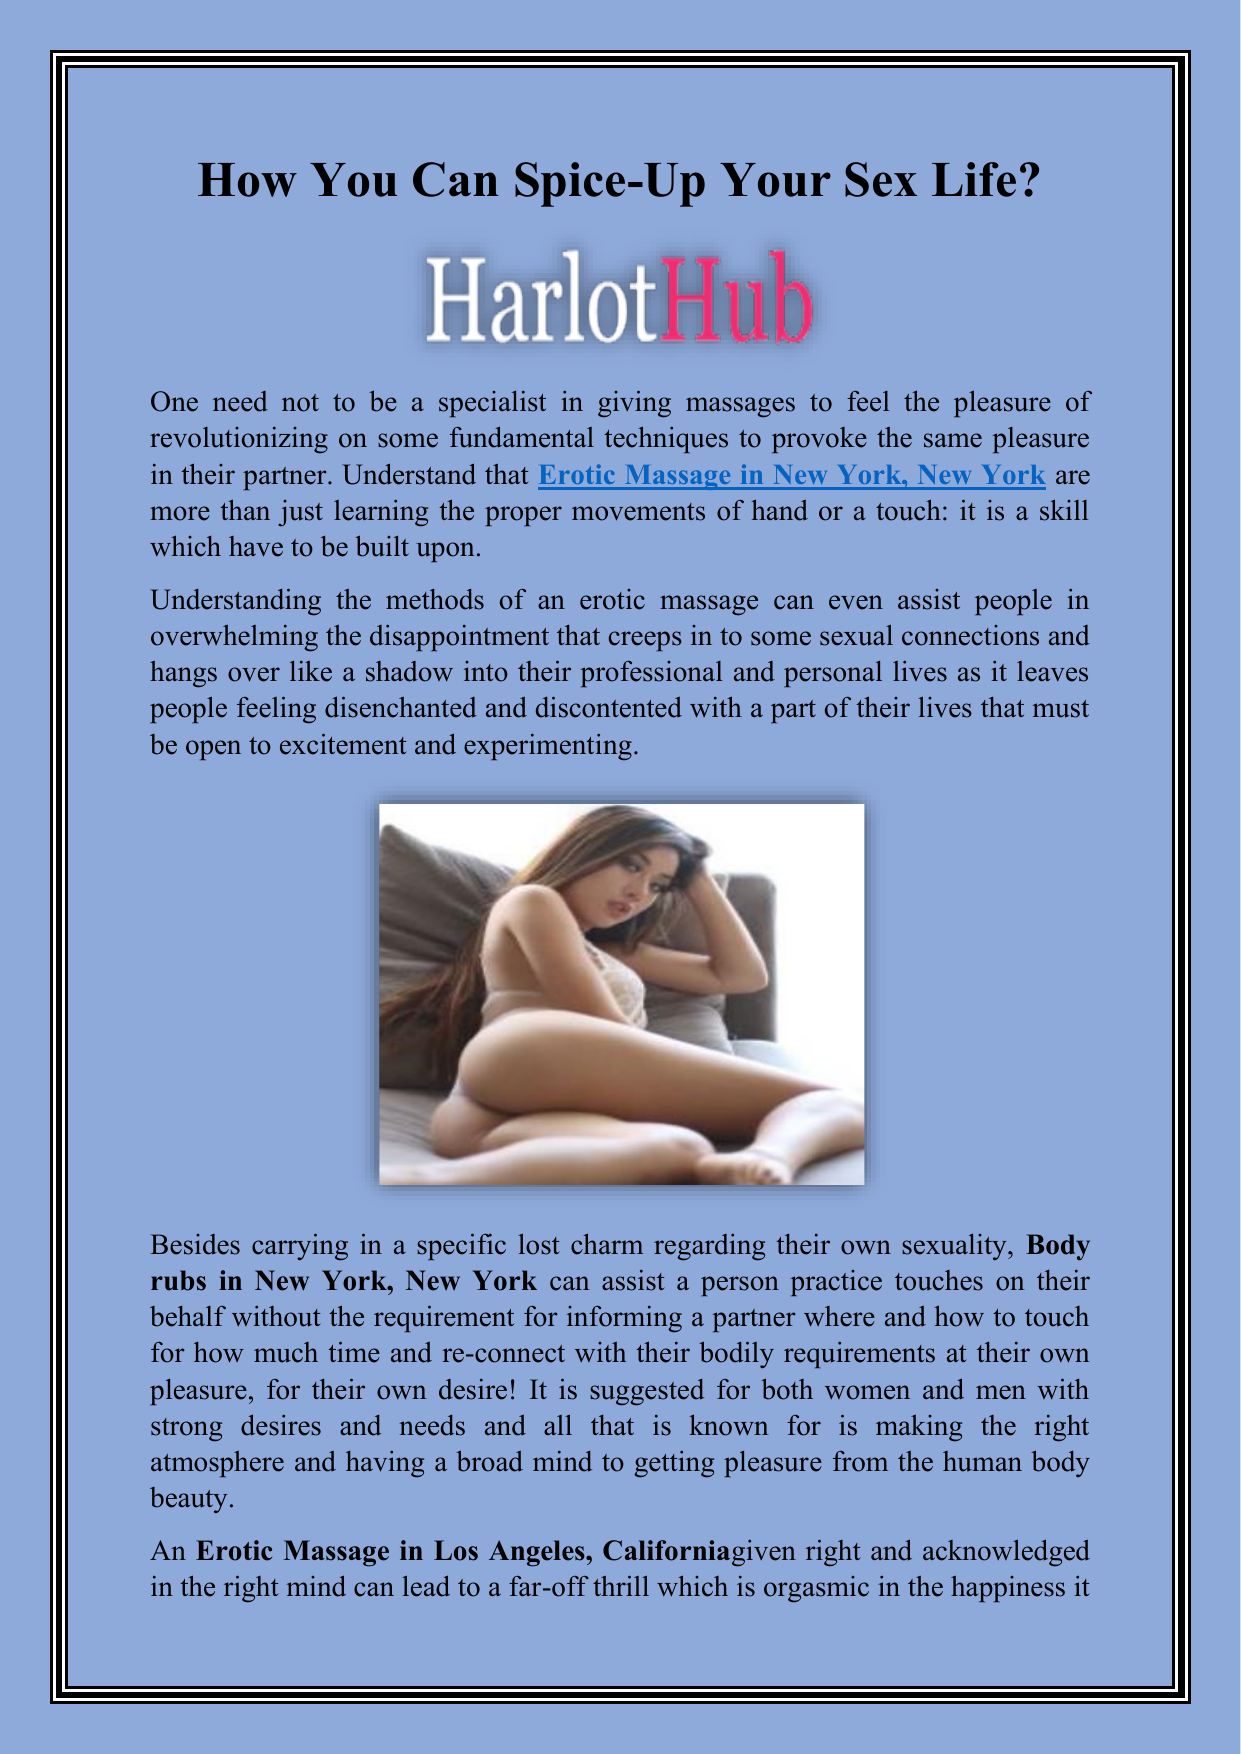 Harlot hub